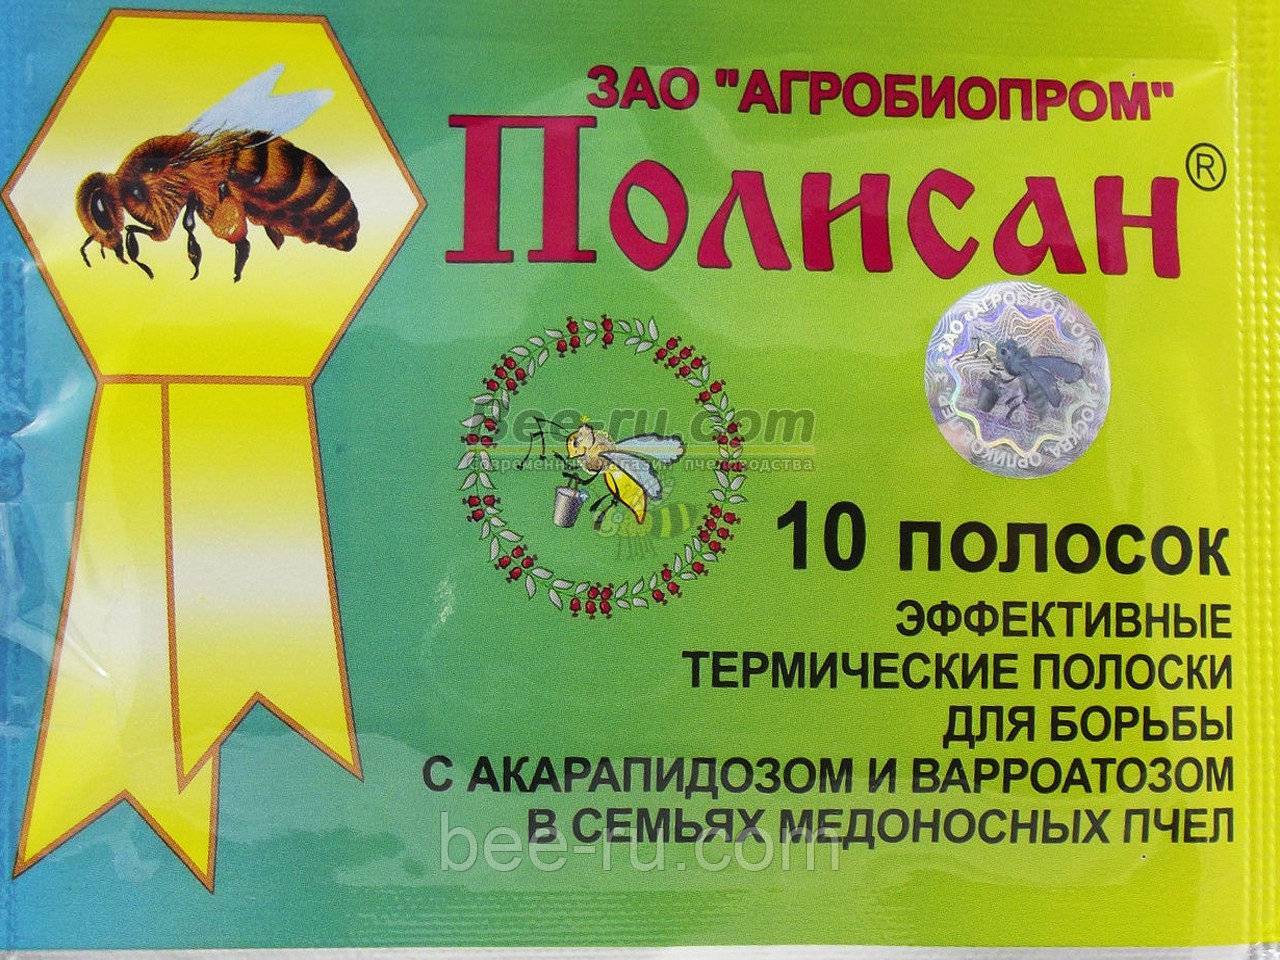 Применение препарата апимакс для подкормки и профилактики пчел